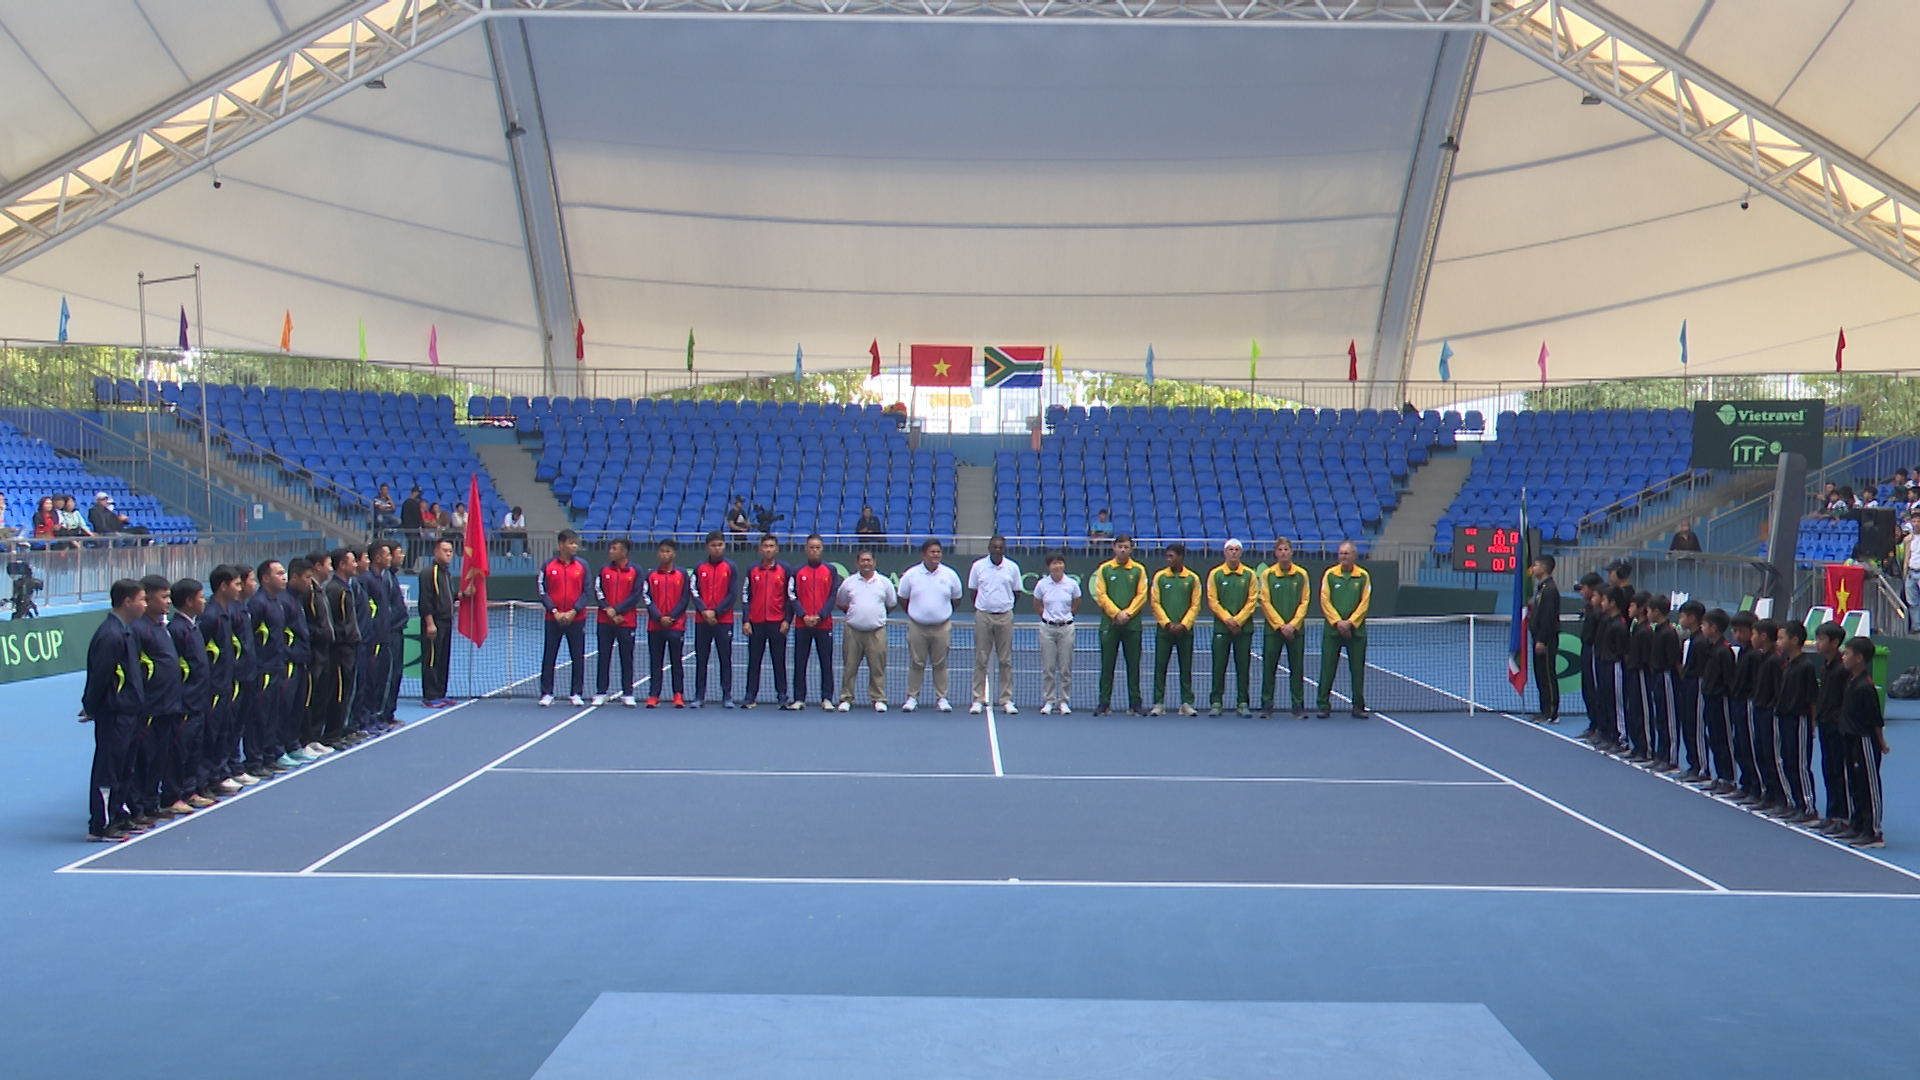 Khai mạc giải quần vợt vô địch đồng đội nam Davis Cup đấu play-offs thăng hạng nhóm II thế giới